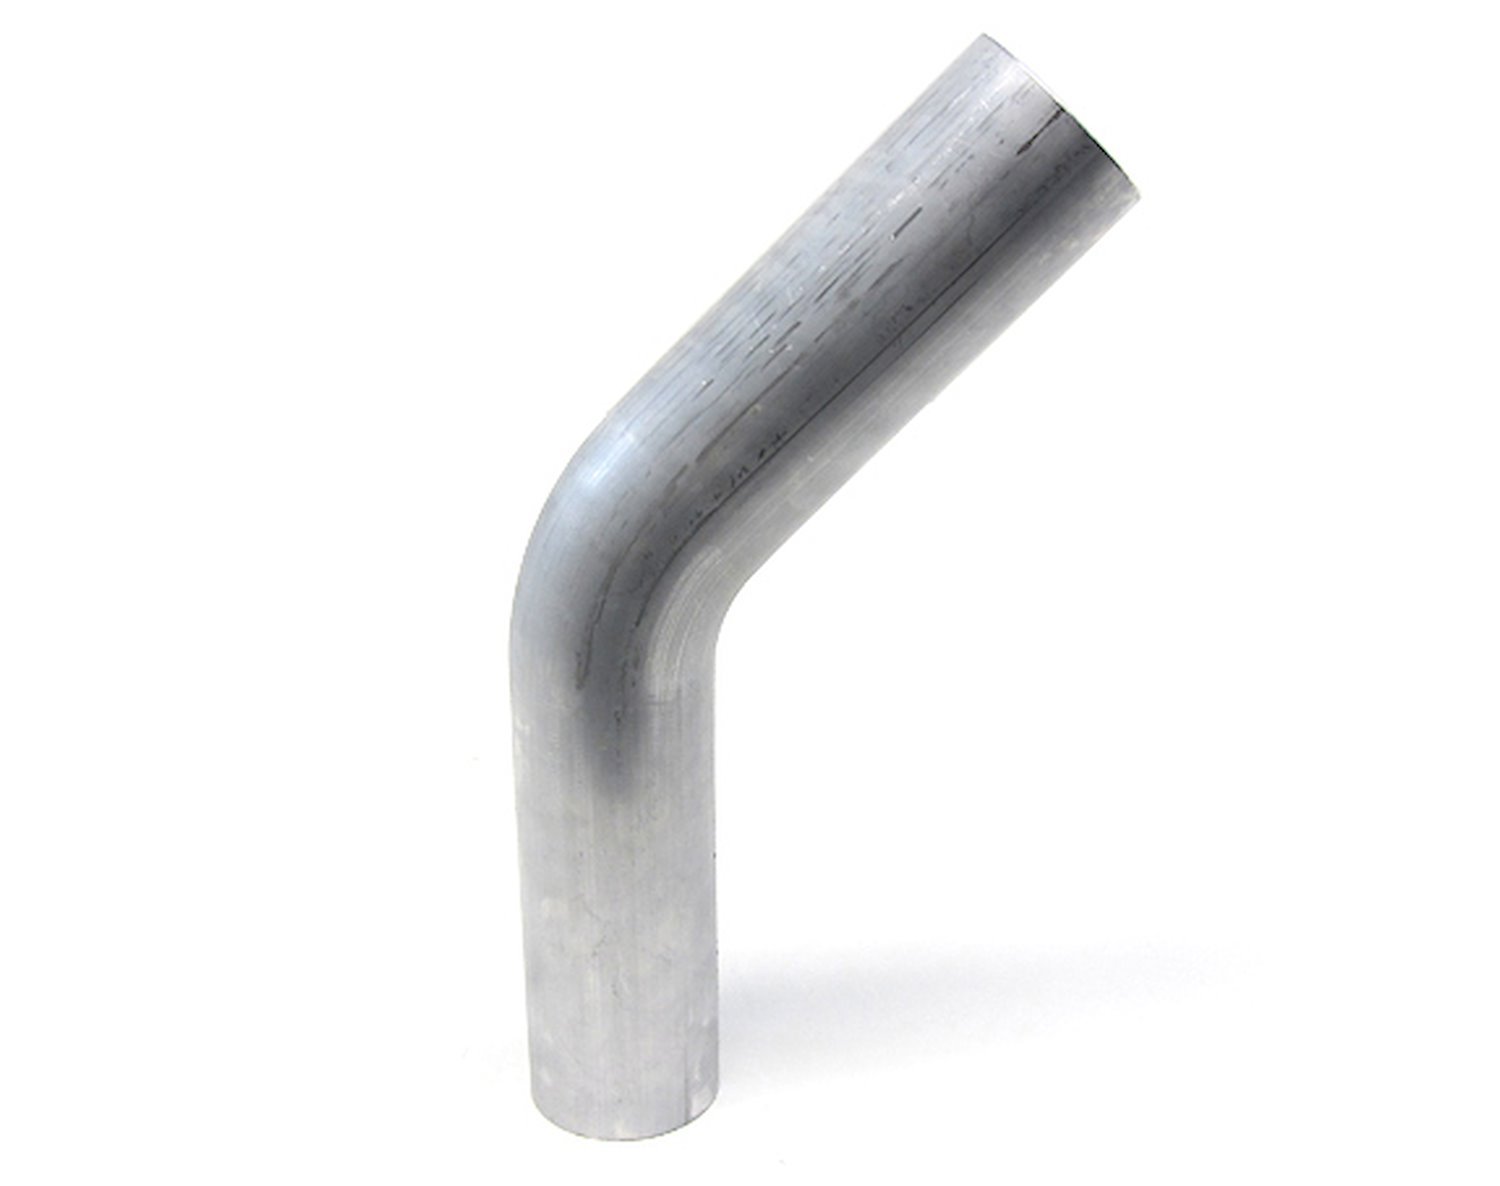 AT45-100-CLR-15 Aluminum Elbow Tube, 6061 Aluminum, 45-Degree Bend Elbow Tubing, 1 in. OD, Tight Radius, 1-1/2 in. CLR